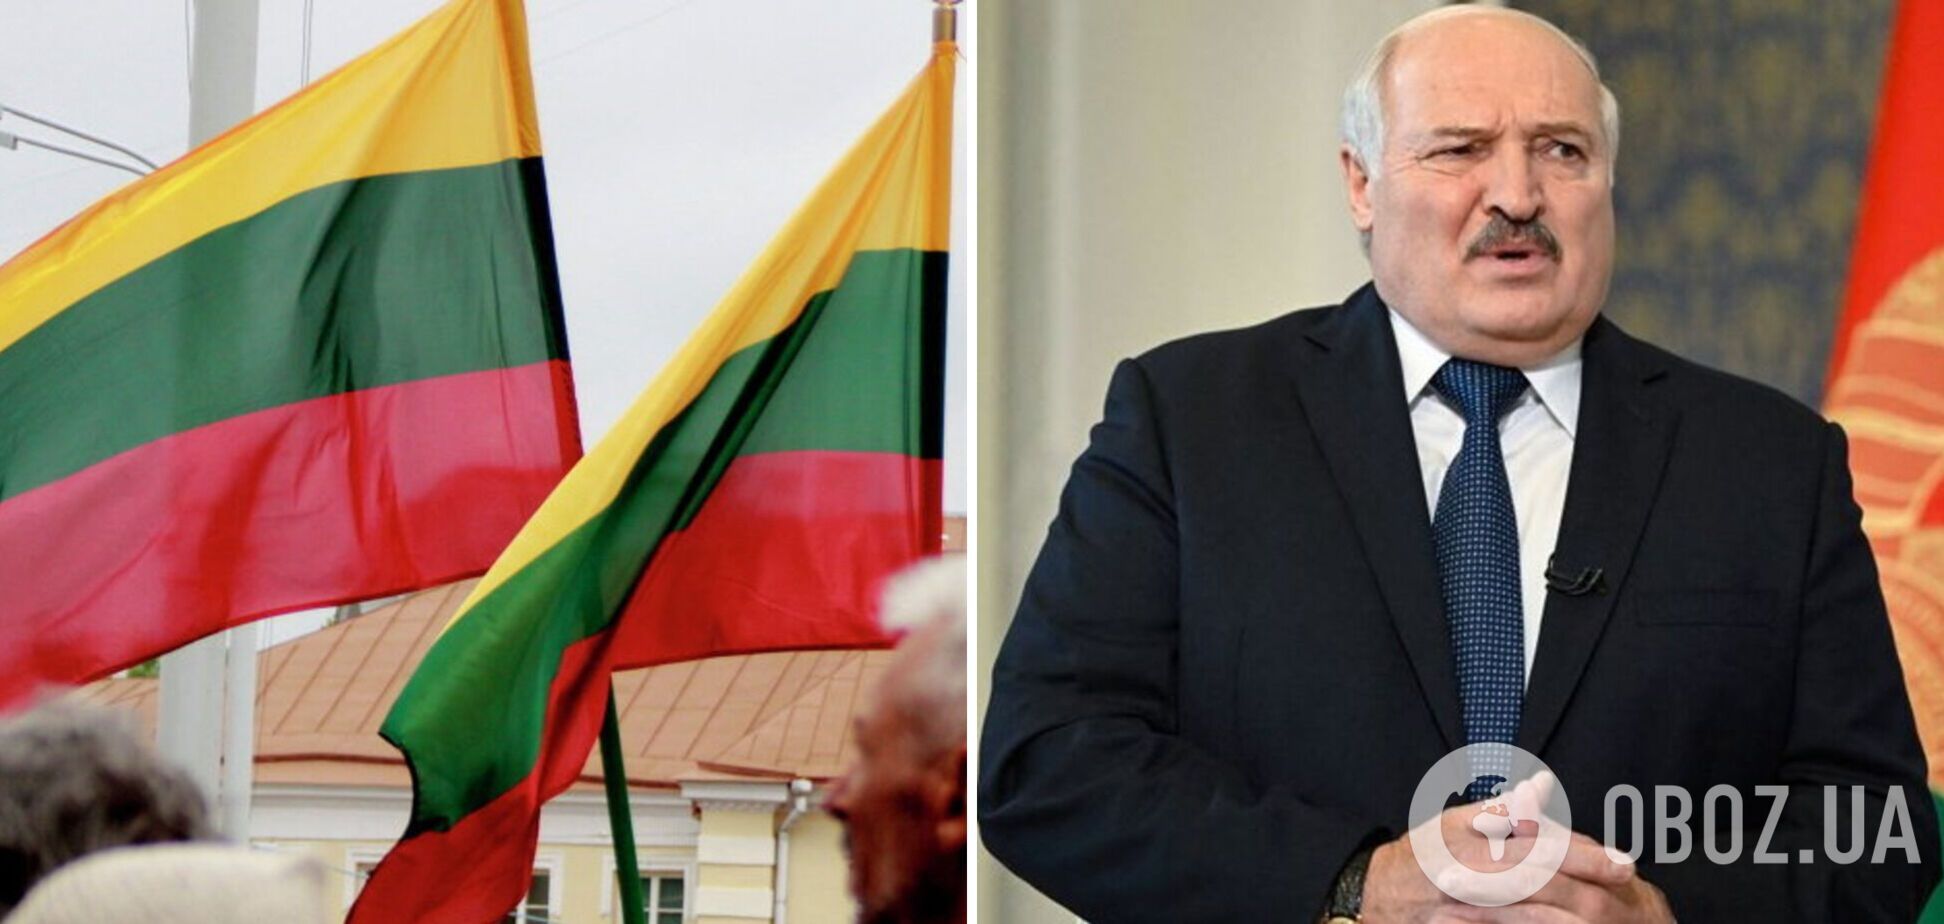 Лукашенко боится планов Путина разгромить белорусскую армию, – оппозиционер Лебедько